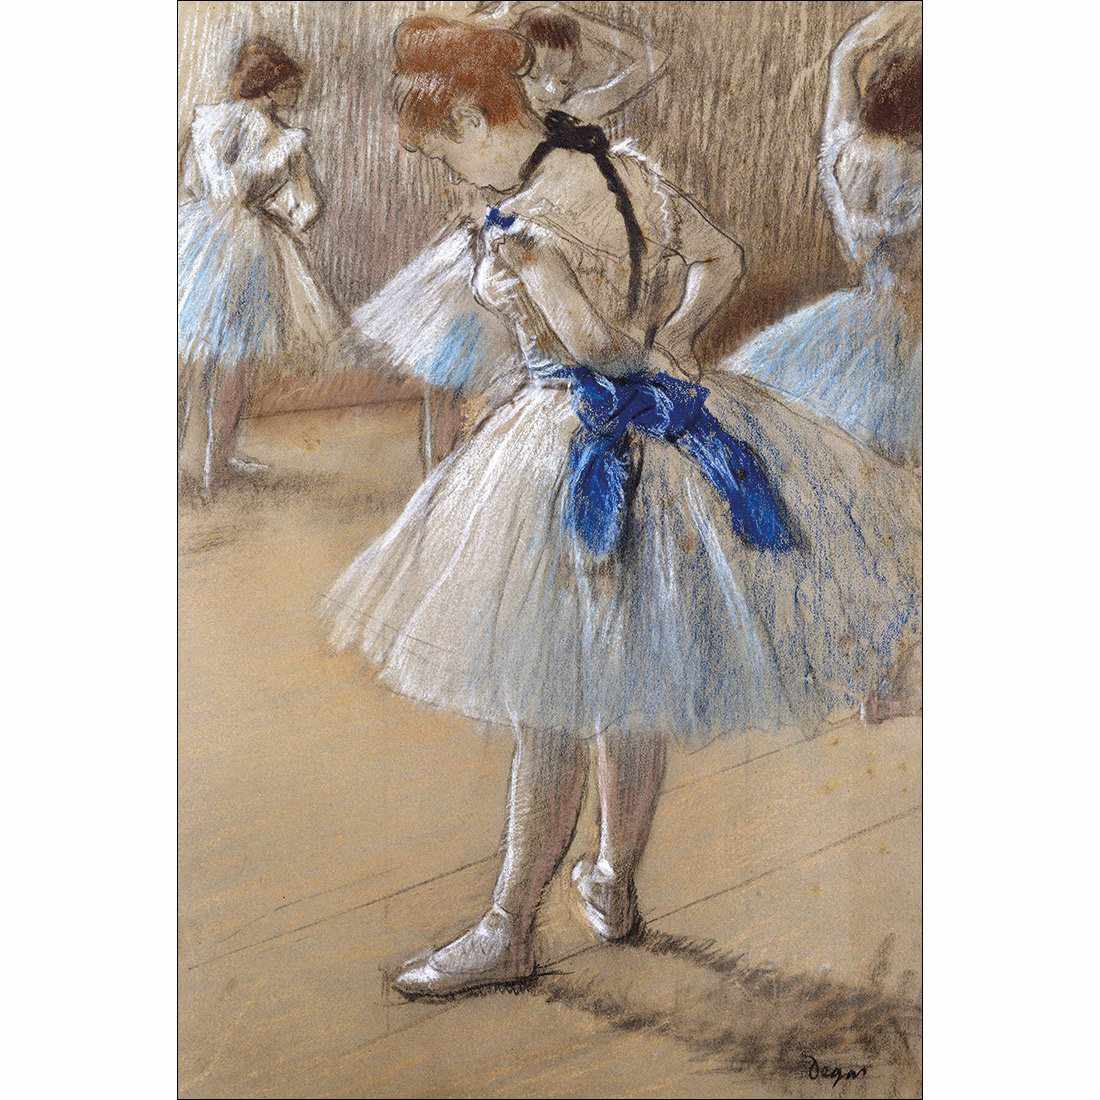 Dancer by Edgar Degas Canvas Art-Canvas-Wall Art Designs-45x30cm-Canvas - No Frame-Wall Art Designs